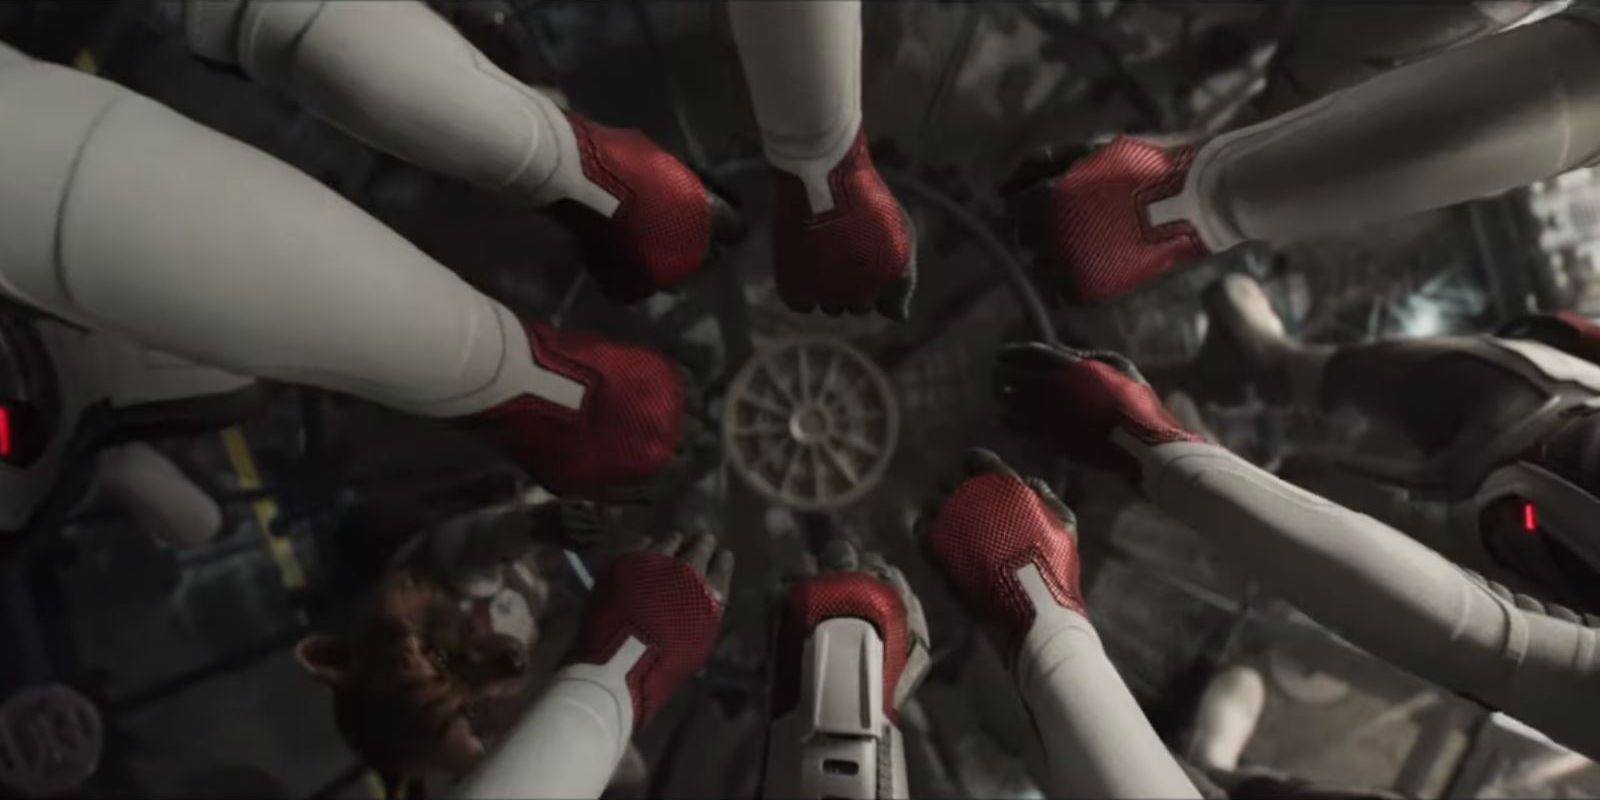 Avengers Endgame Team Hands Together